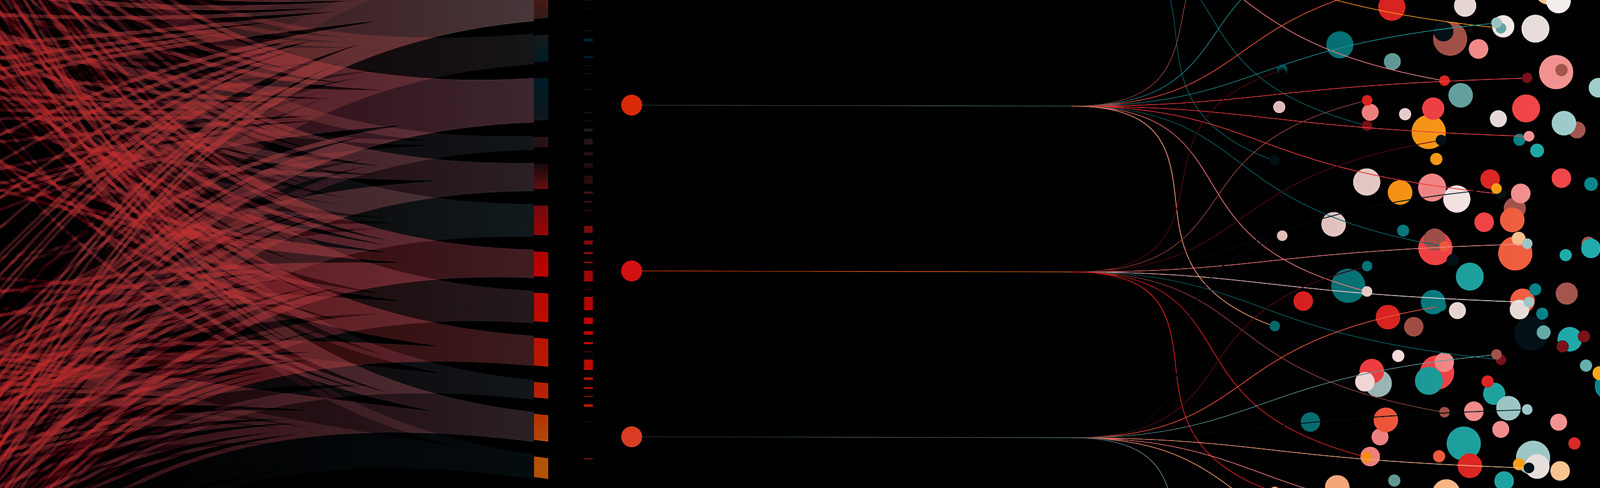 Image showing data visualisation